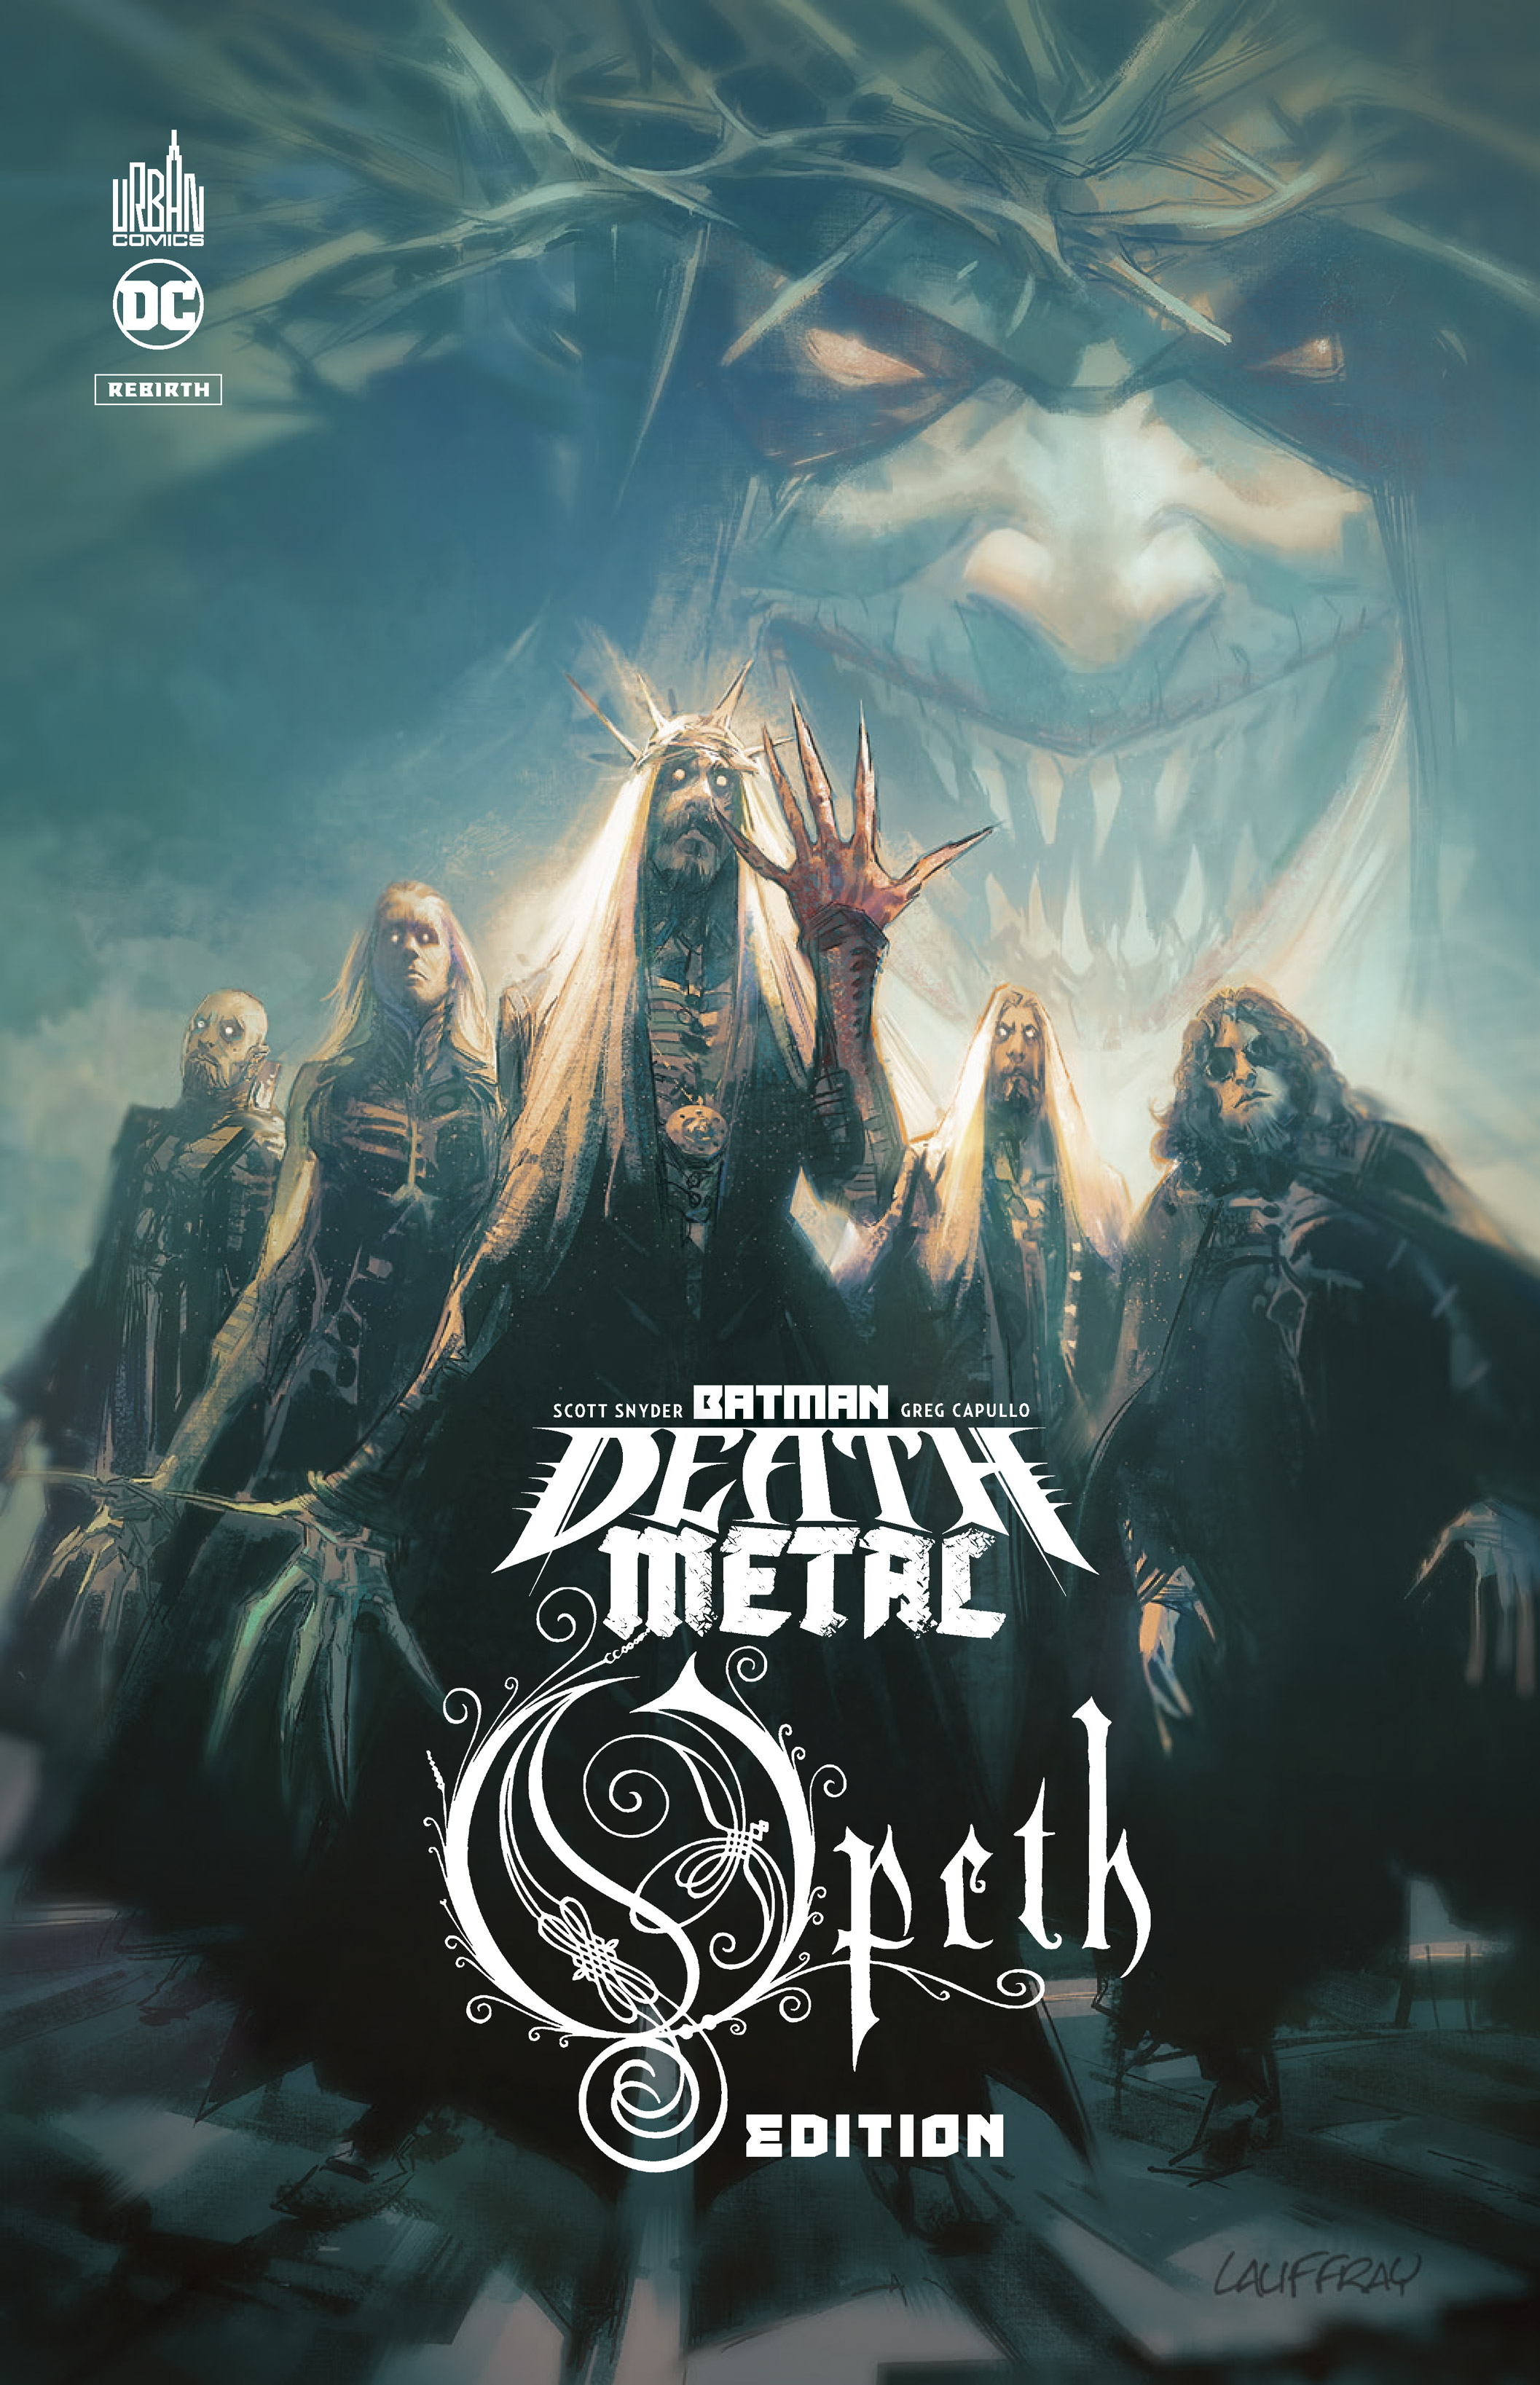 Batman death metal  -  édition spéciale – Tome 4 – Batman Death Metal #4 Opeth Edition - couv